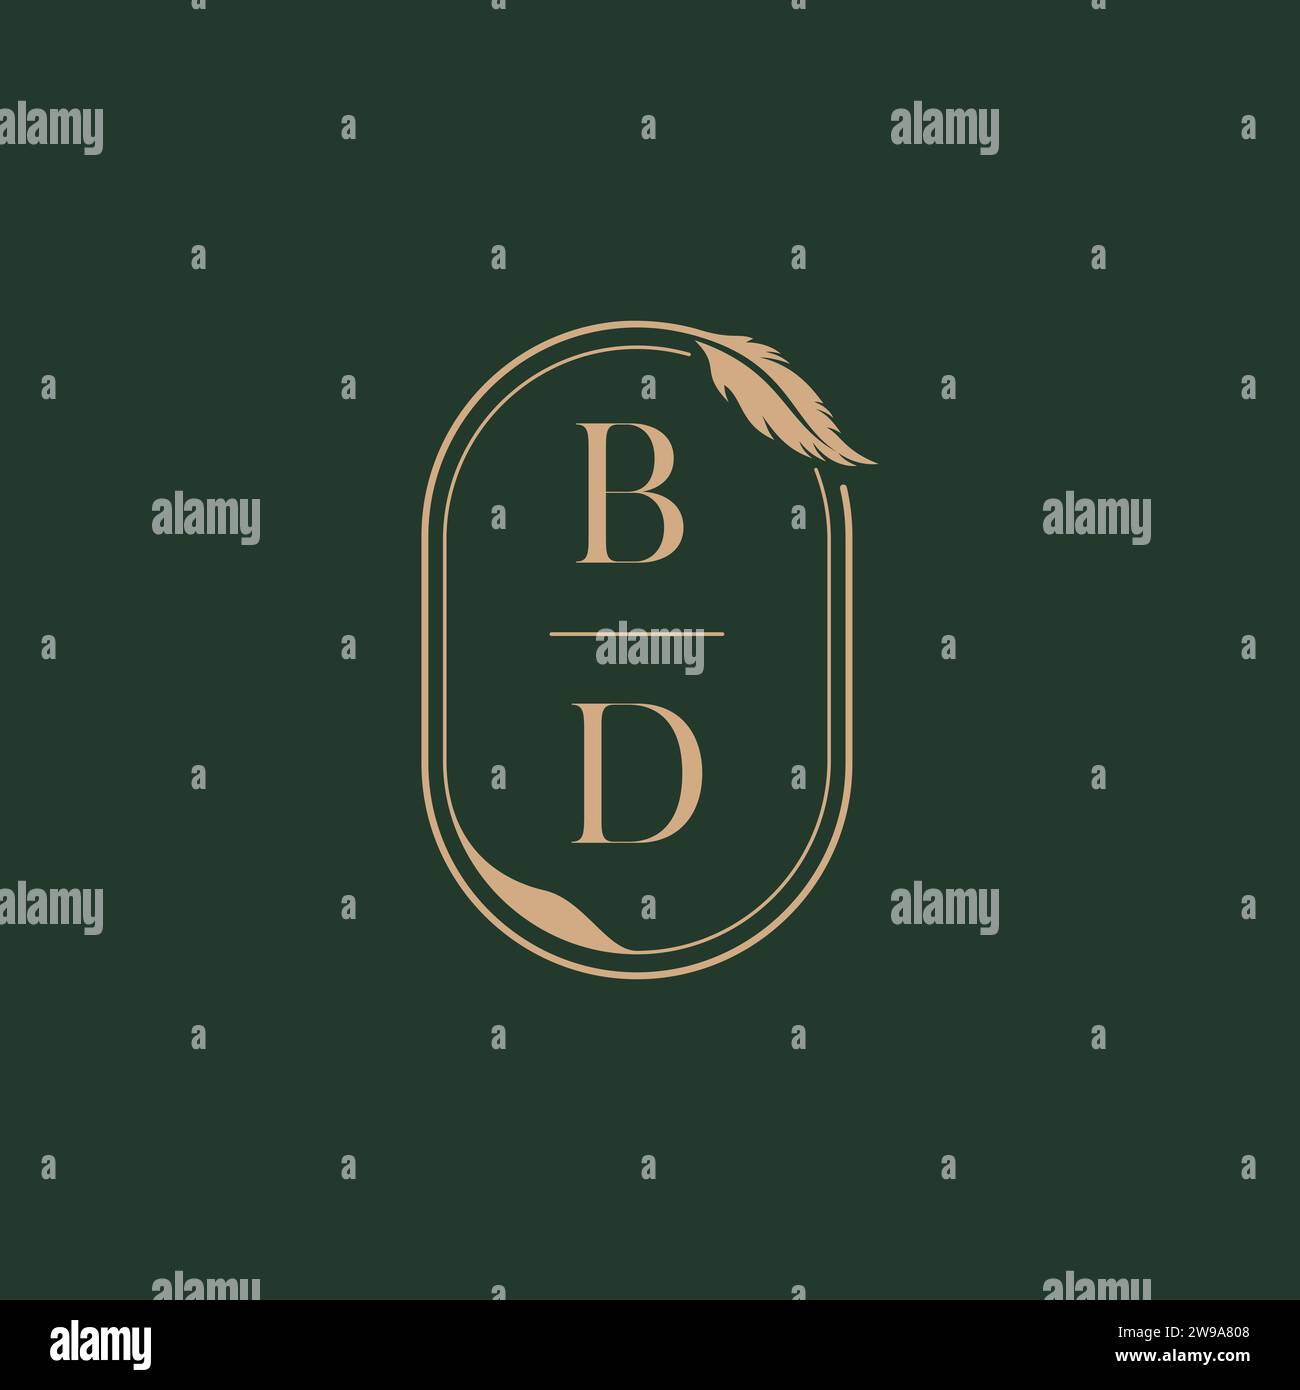 BD feather concept wedding monogram logo design ideas as inspiration Stock Vector